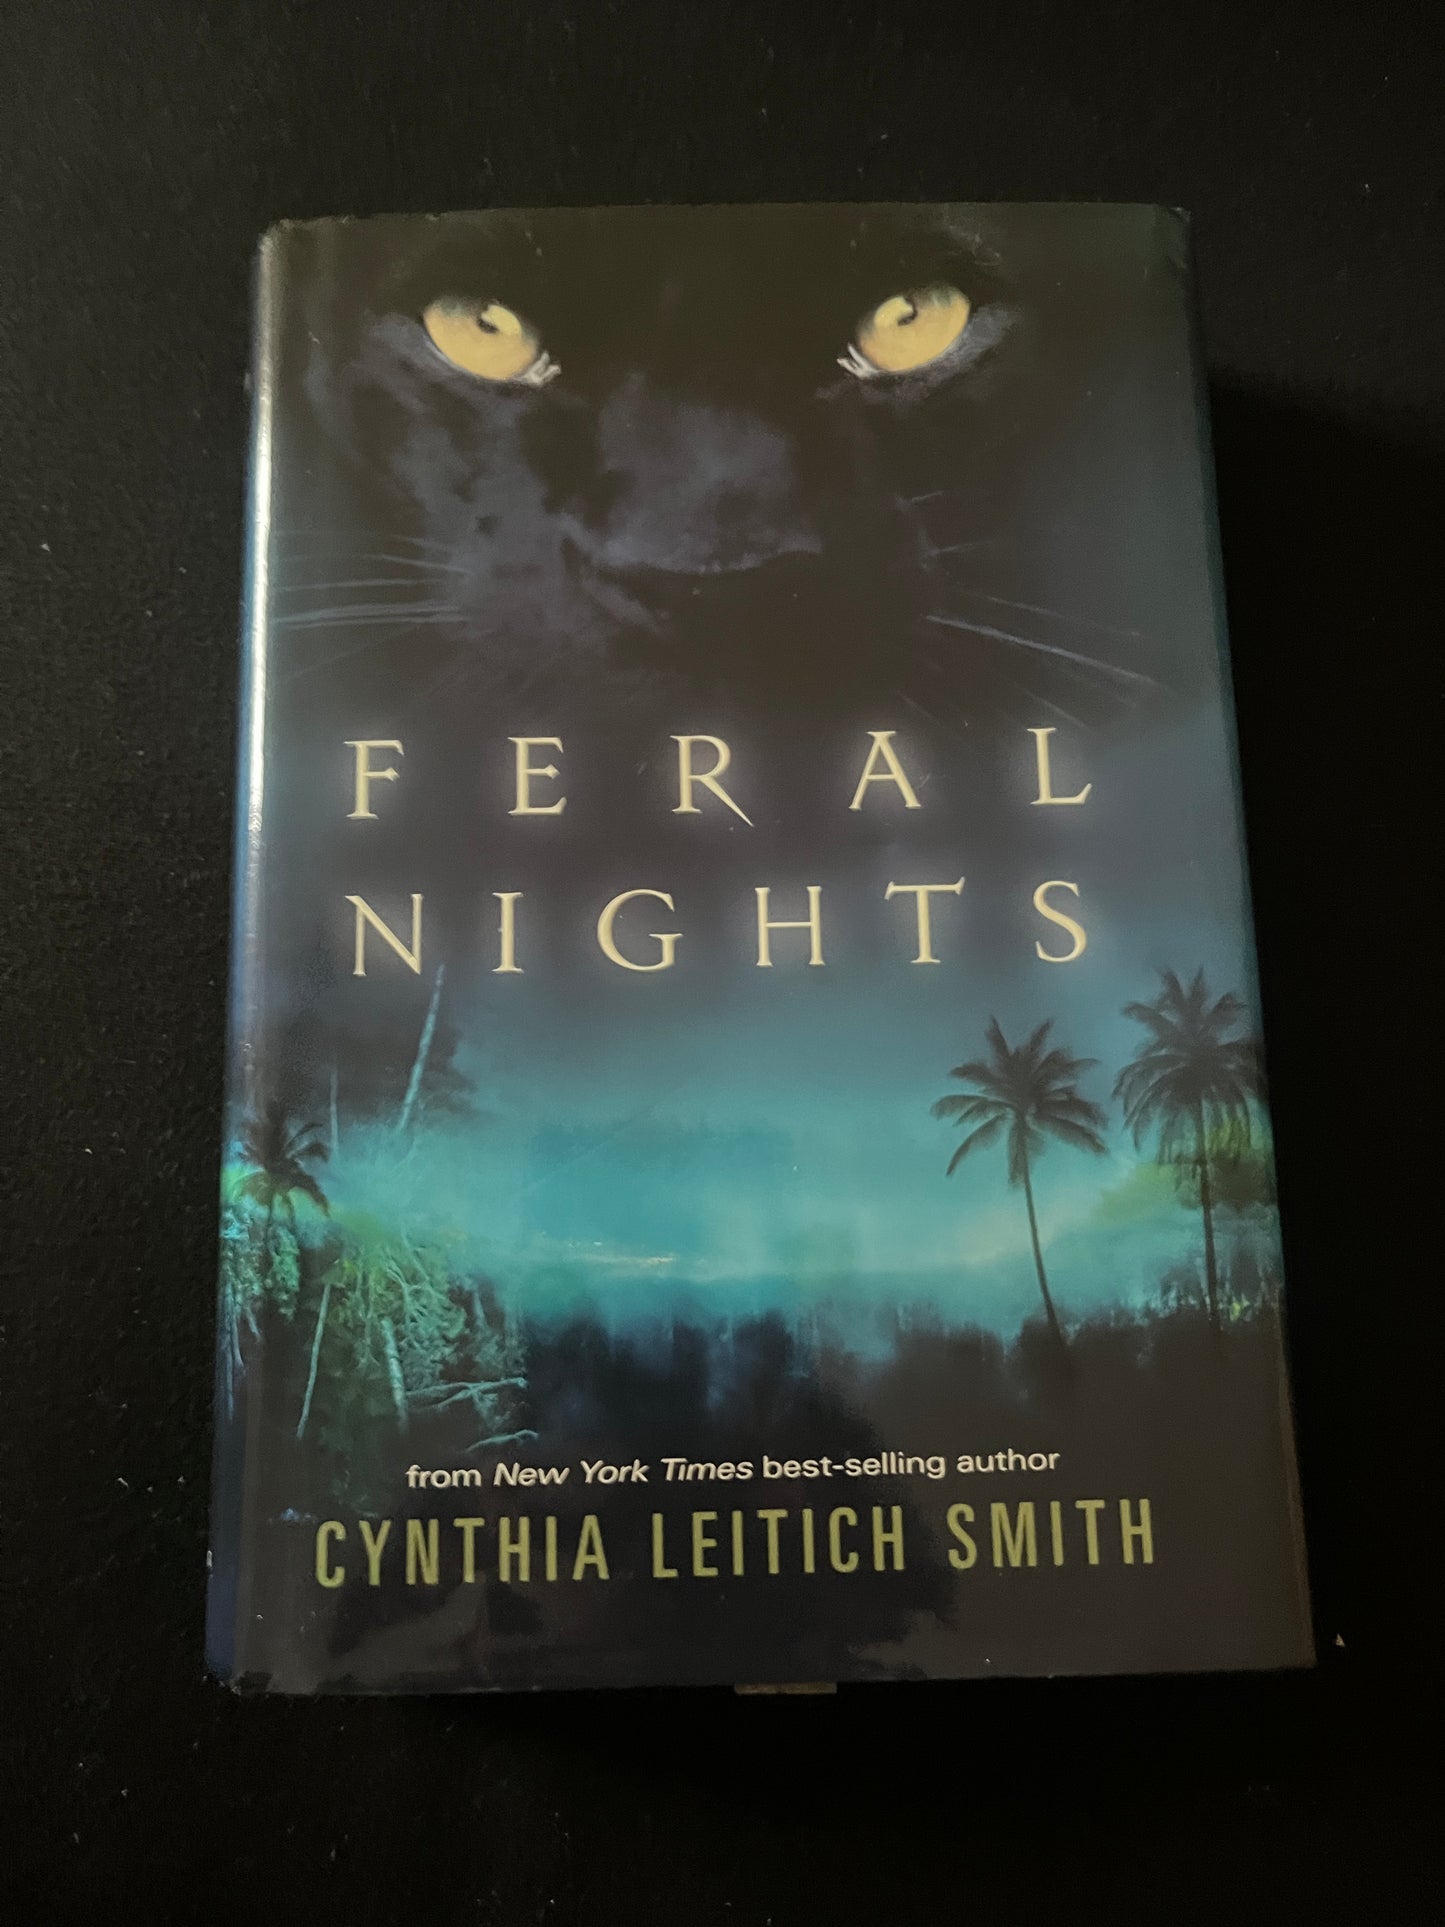 FERAL NIGHTS by Cynthia Leitich Smith